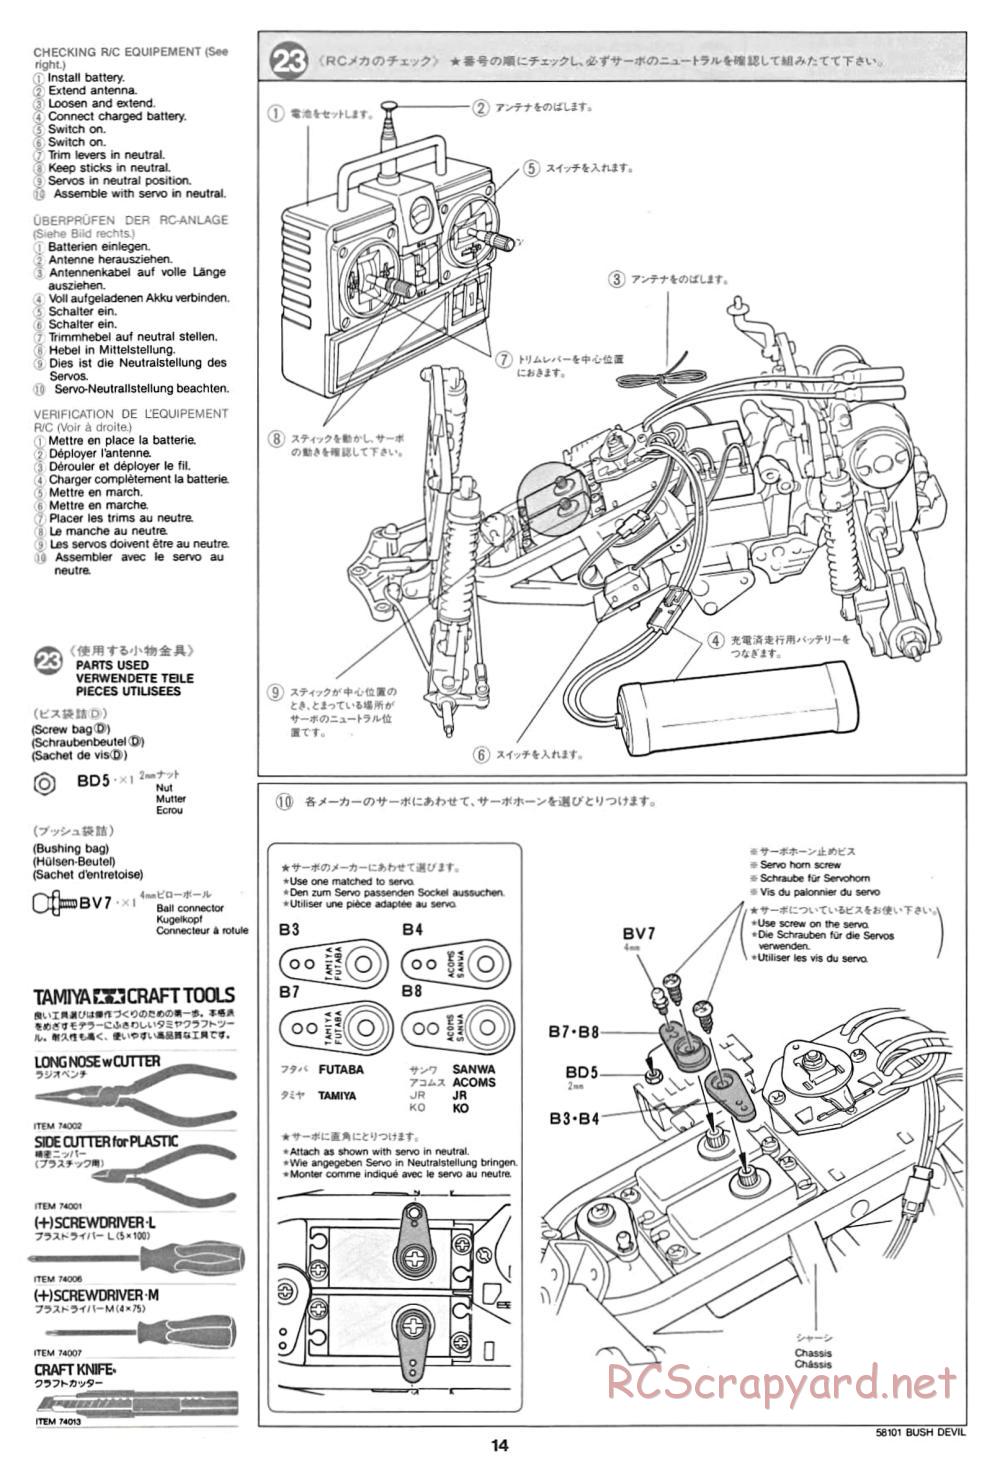 Tamiya - Bush Devil Chassis - Manual - Page 14